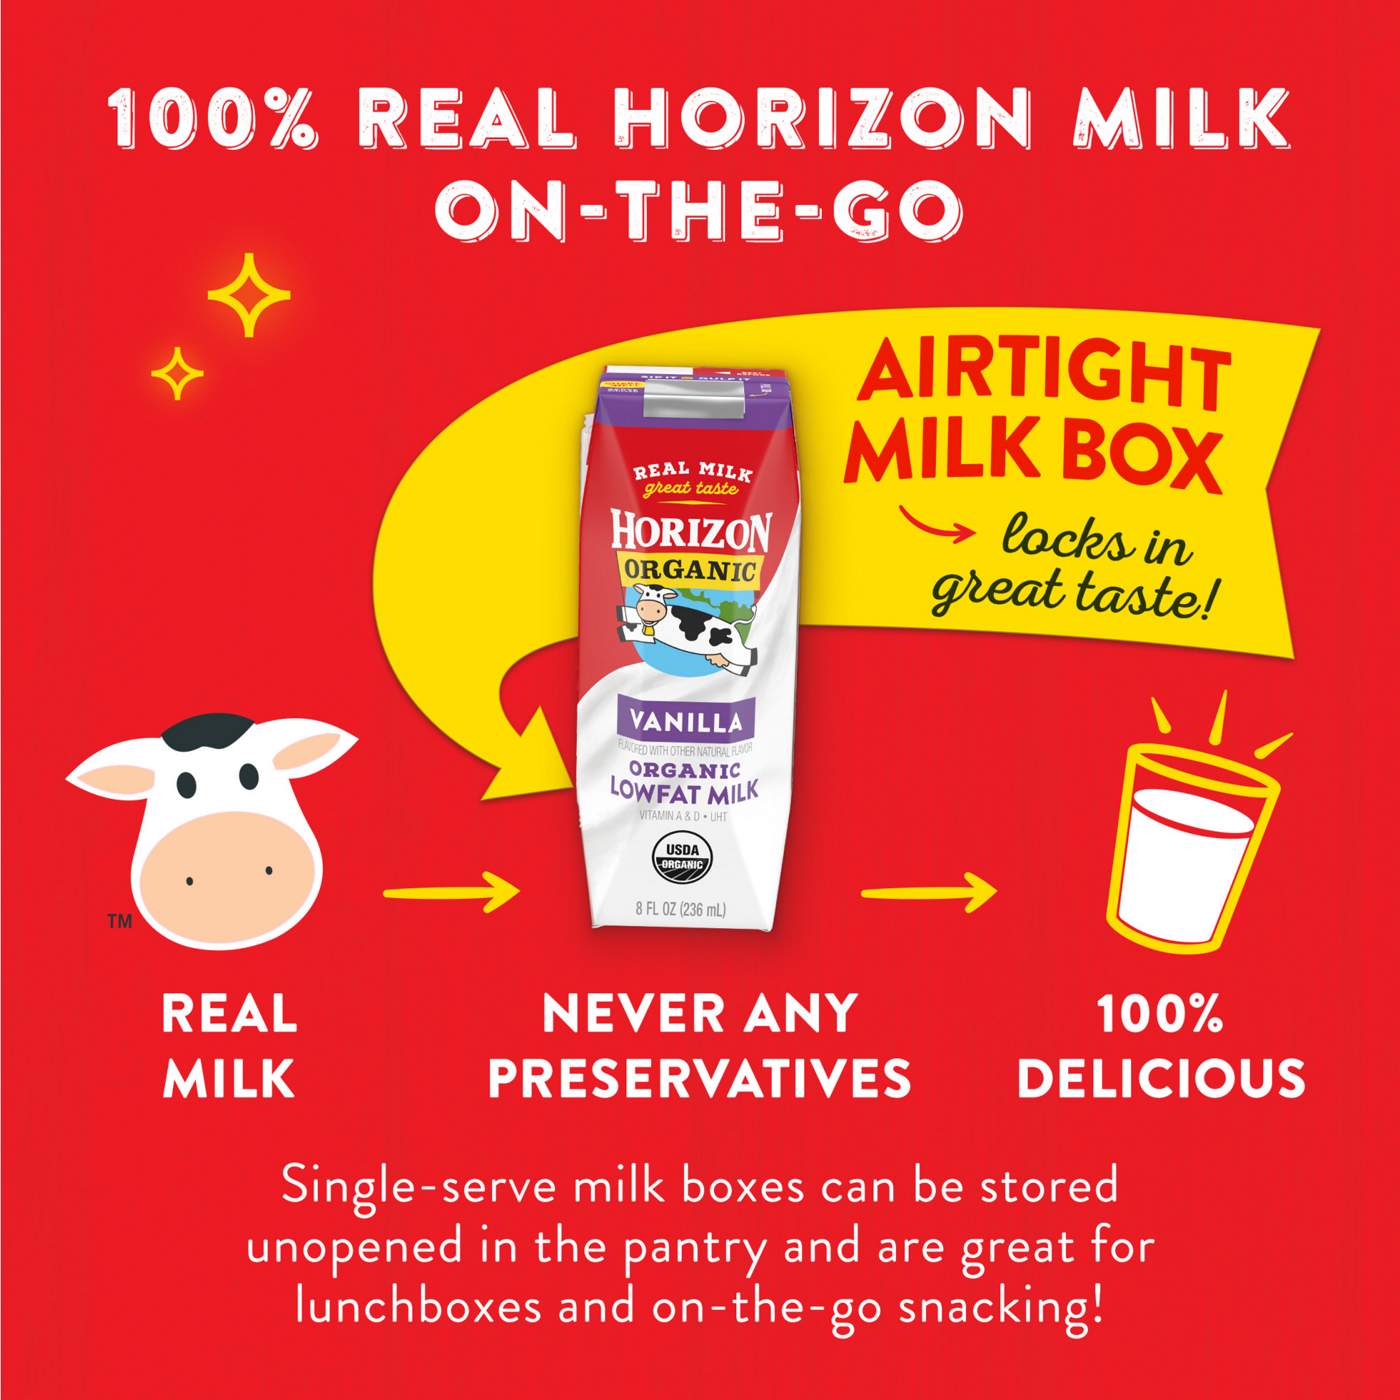 Horizon Organic 1% Lowfat Uht Vanilla Milk 8 oz Cartons; image 2 of 5